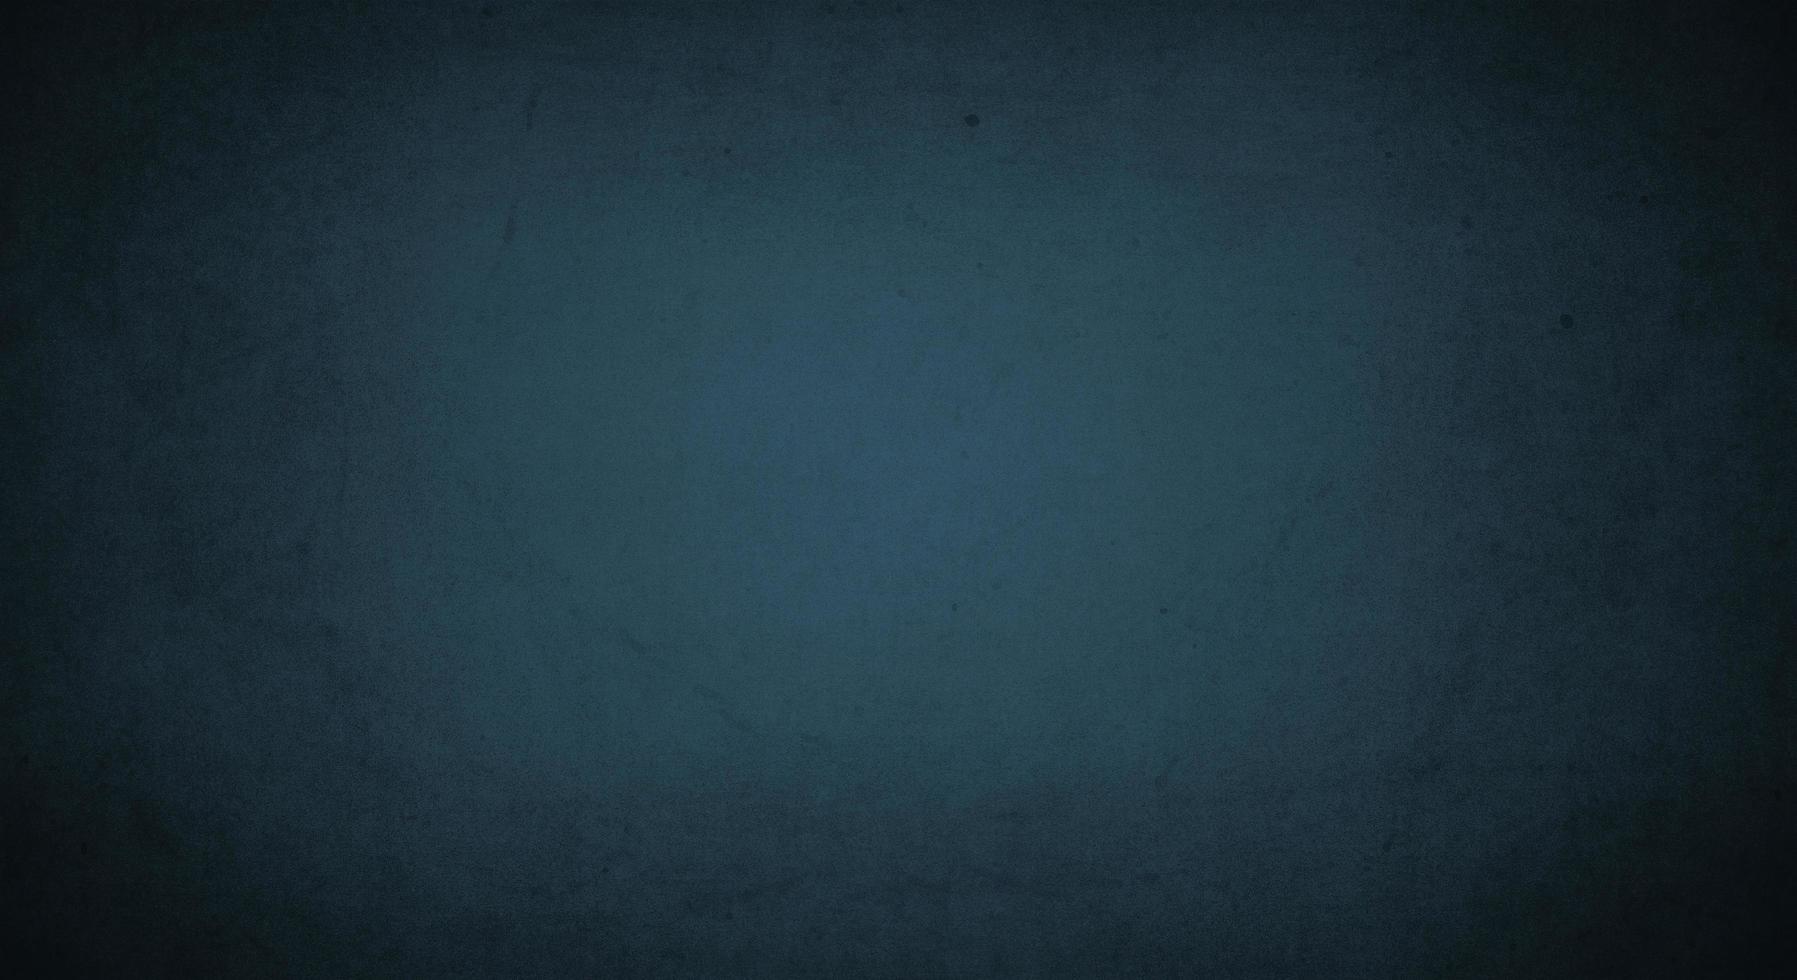 donkere groenblauw grunge achtergrond met zachte lichte en donkere rand, oude vintage achtergrond foto